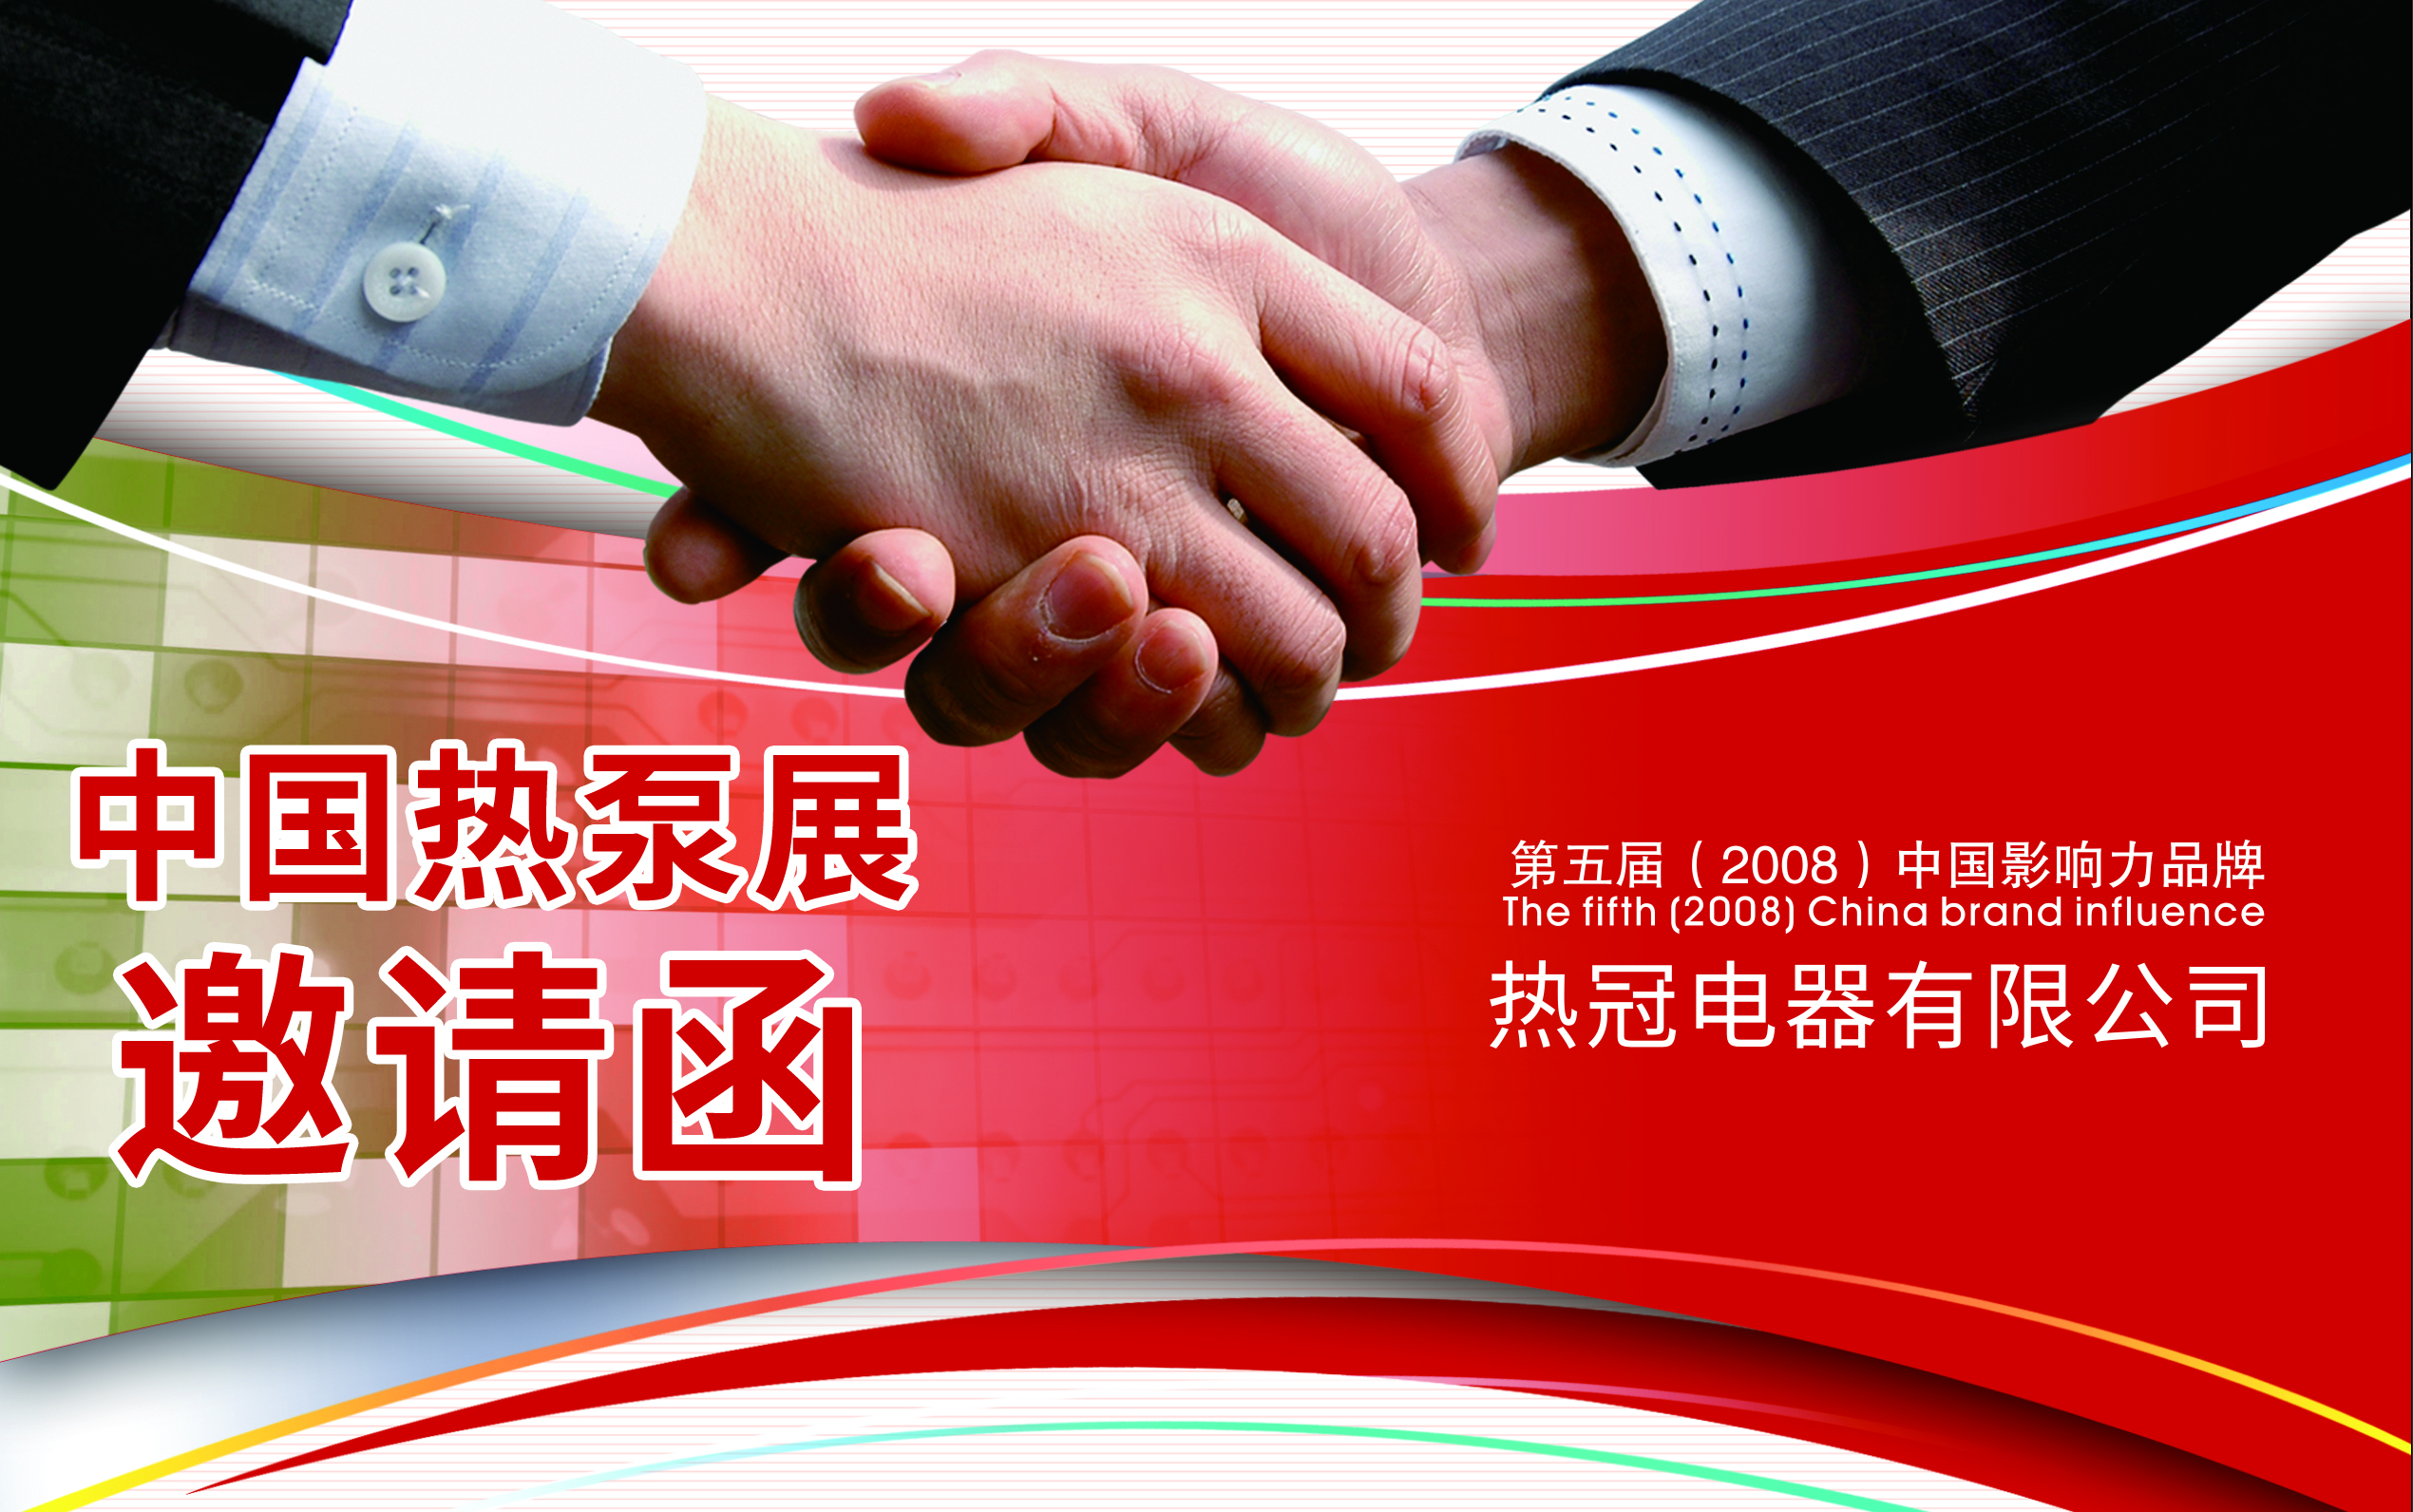 【邀请函】热冠空气能邀请您参加第8届中国热泵展